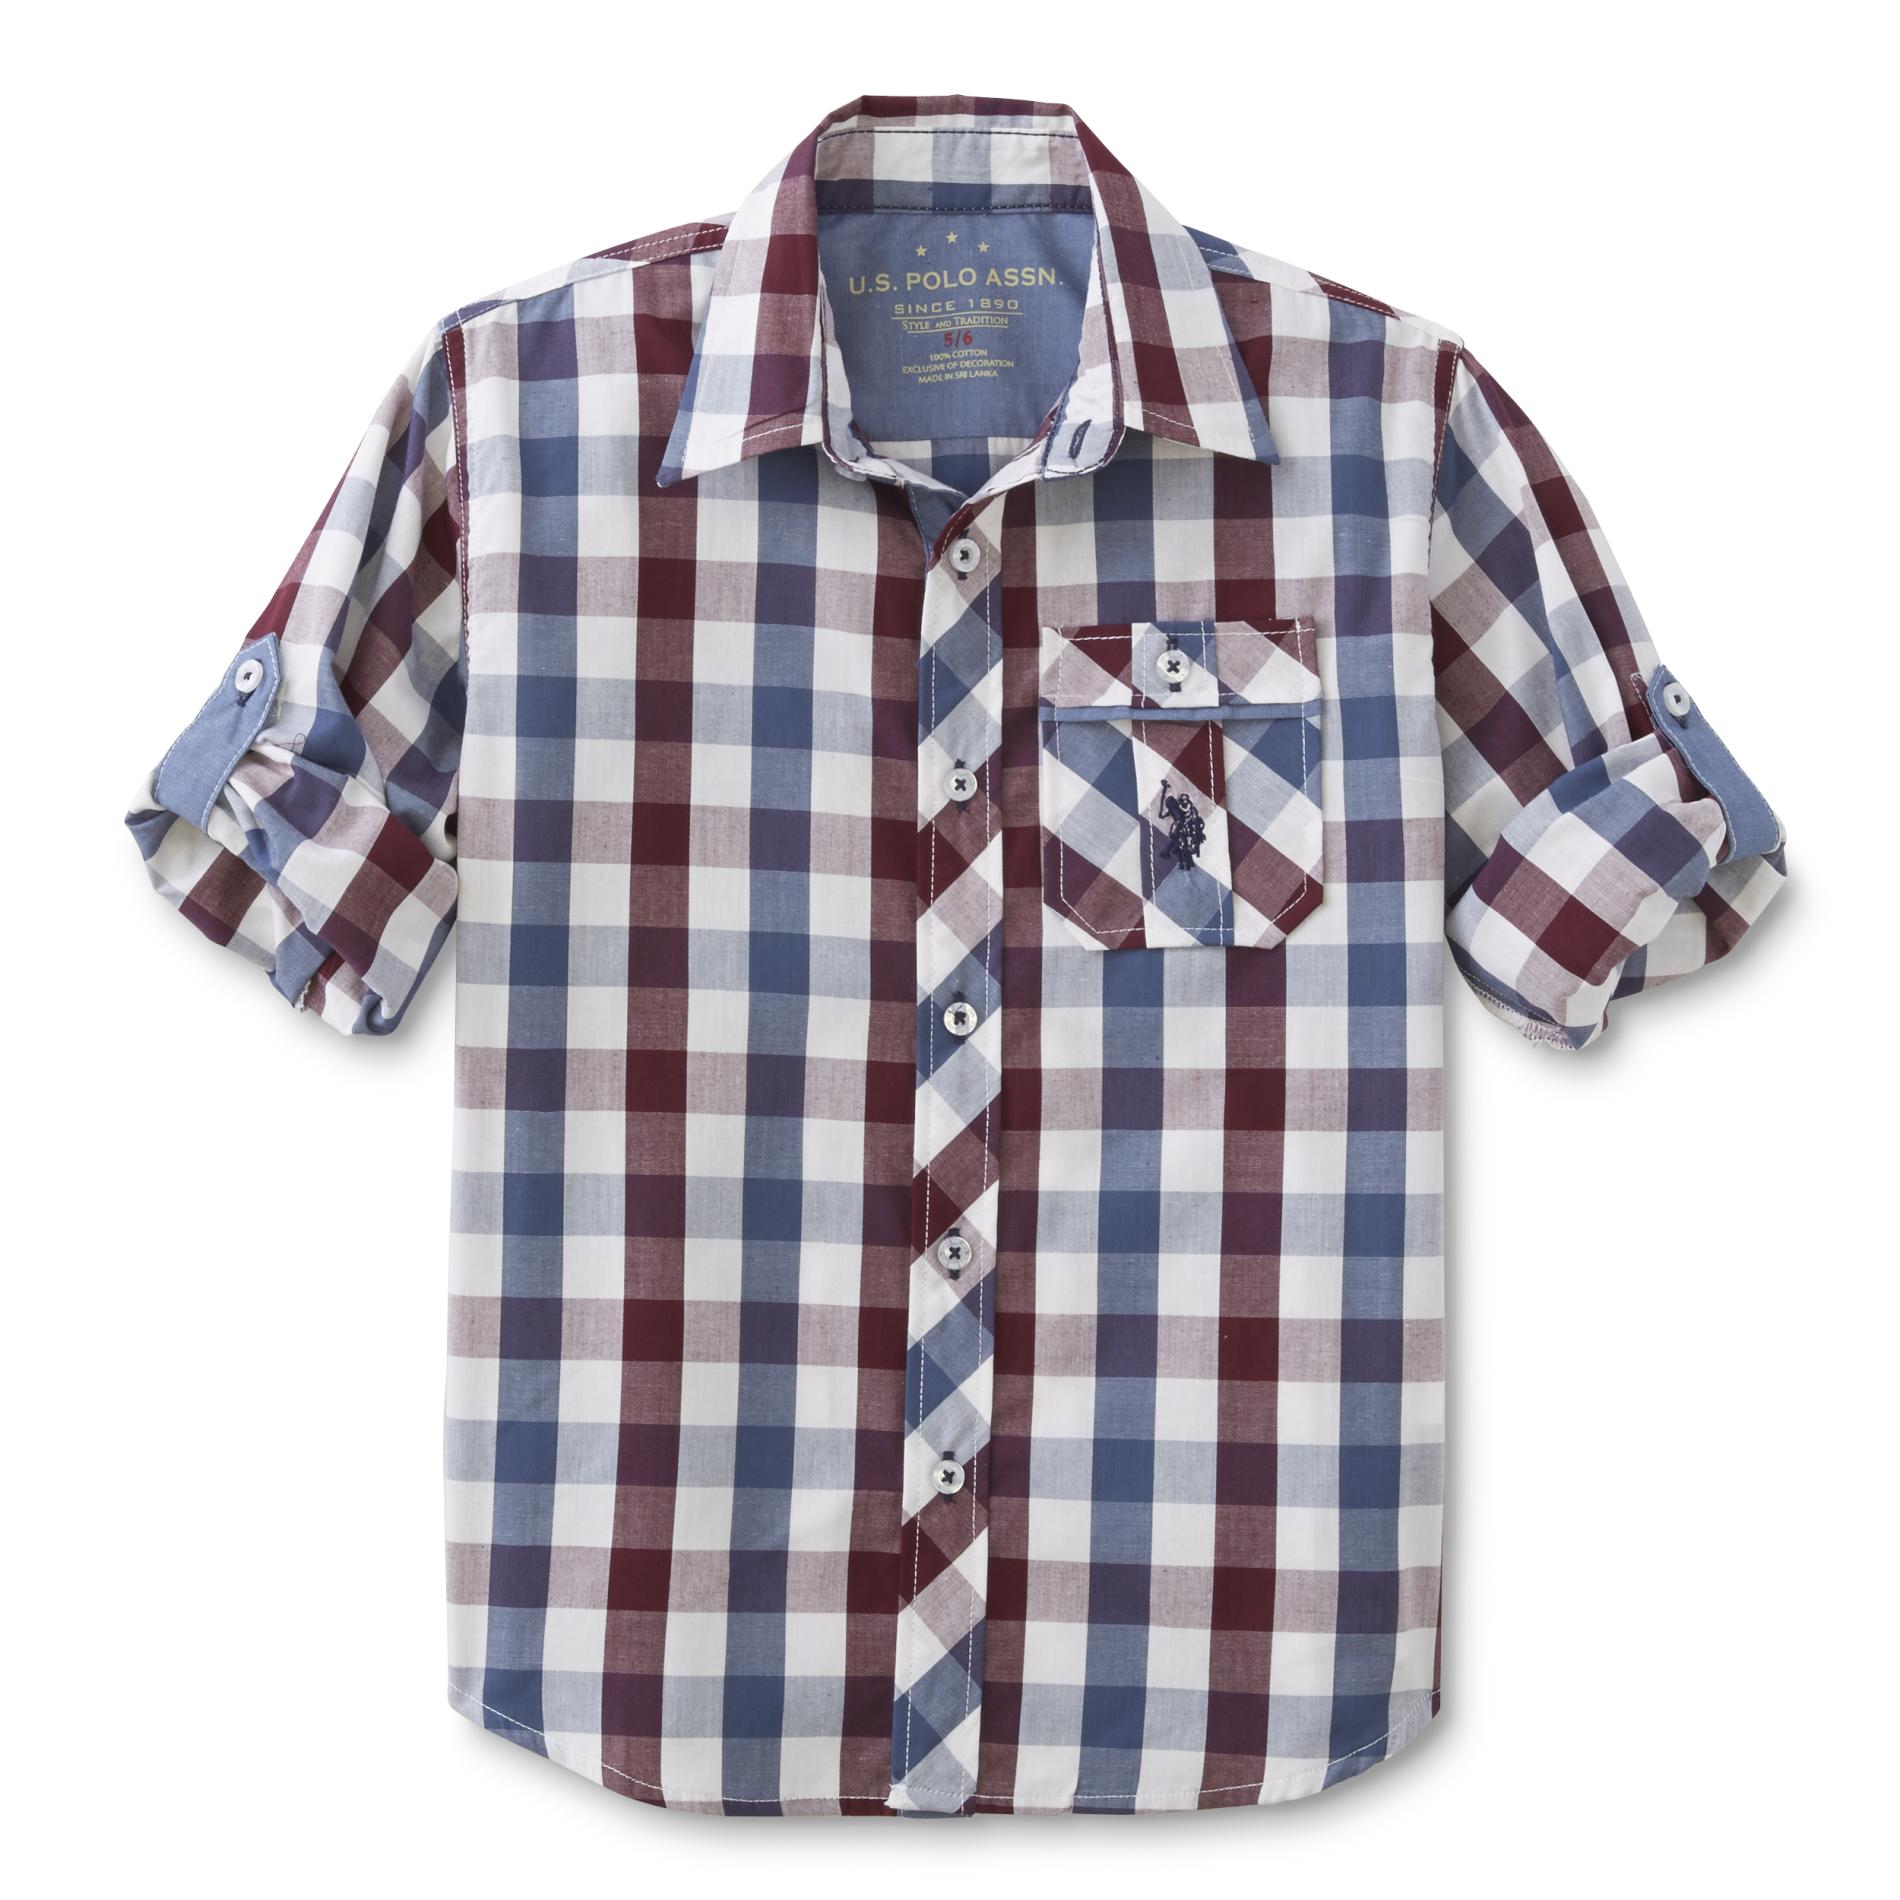 U.S. Polo Assn. Boy's Button-Front Shirt - Checkered